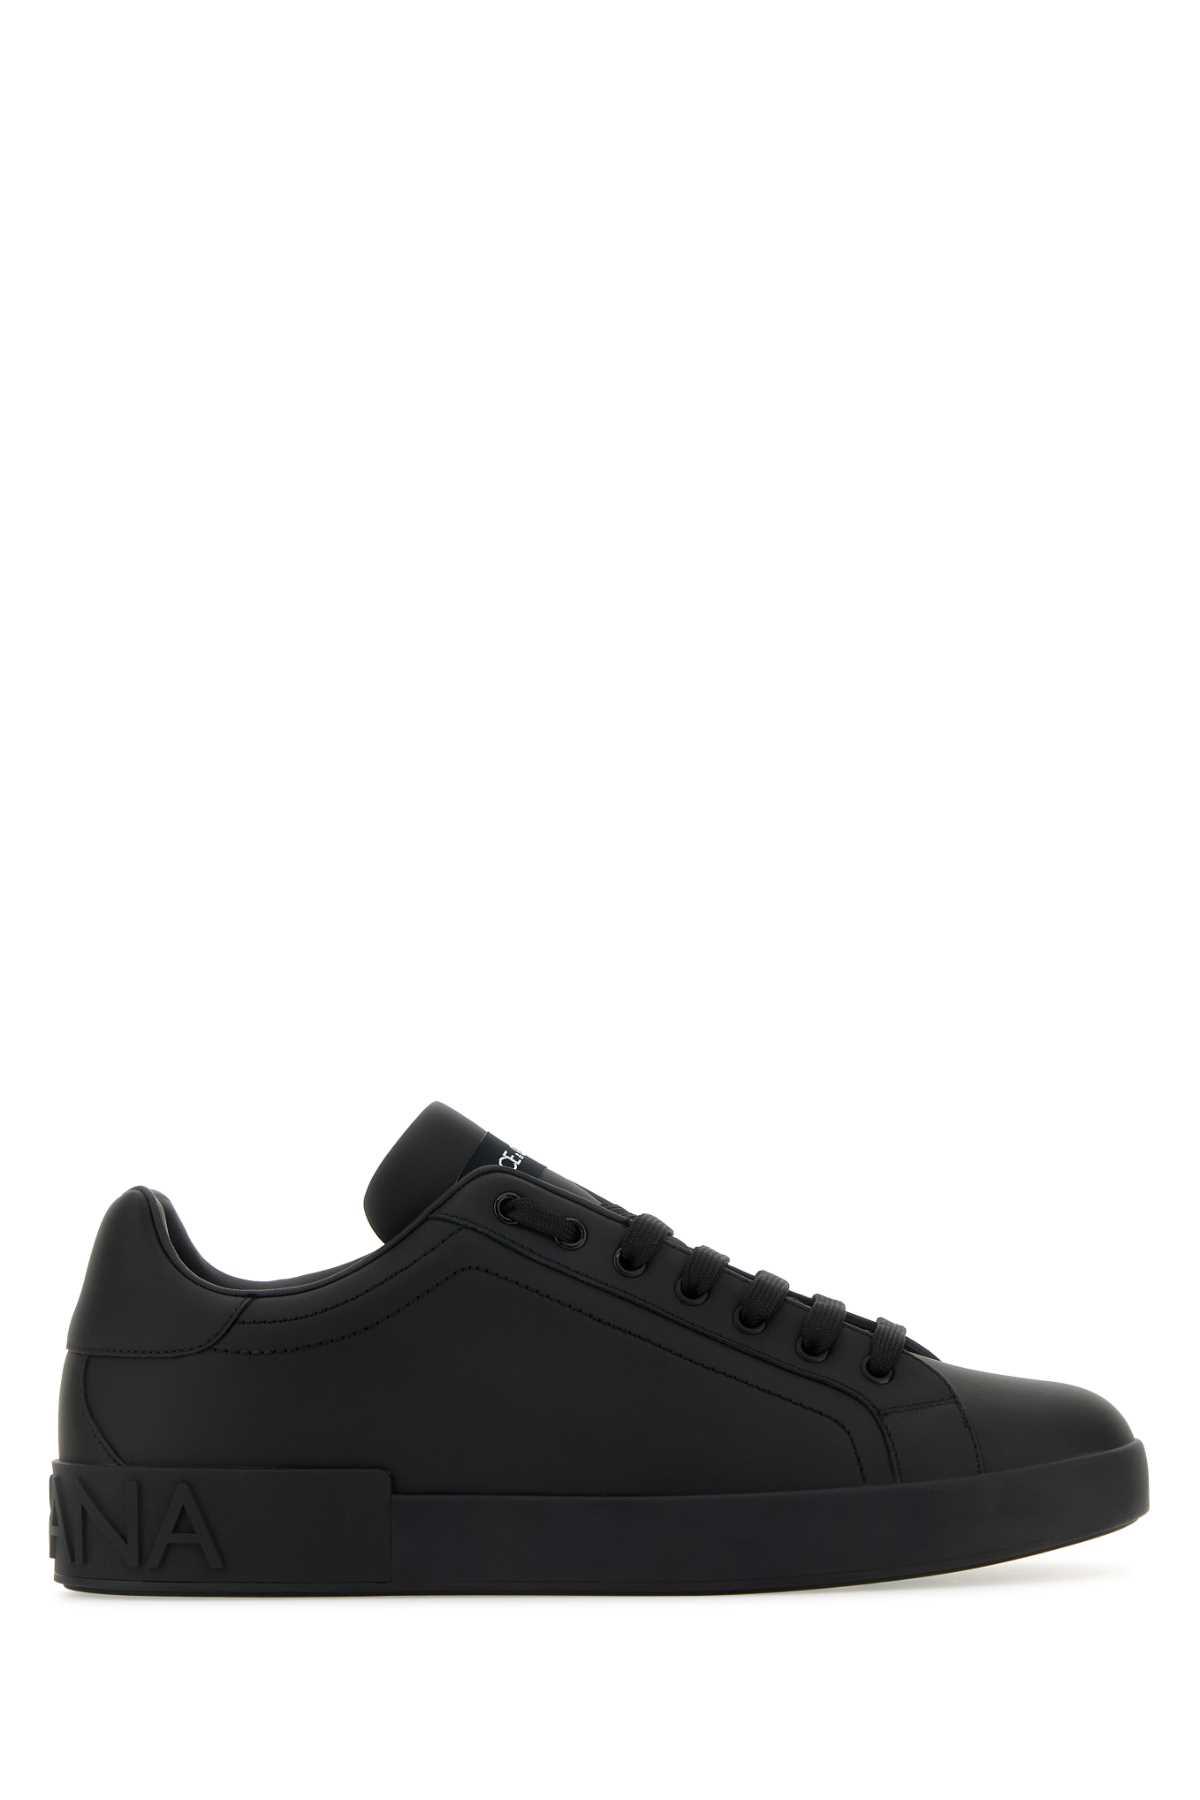 Shop Dolce & Gabbana Black Leather Portofino Sneakers In Nero